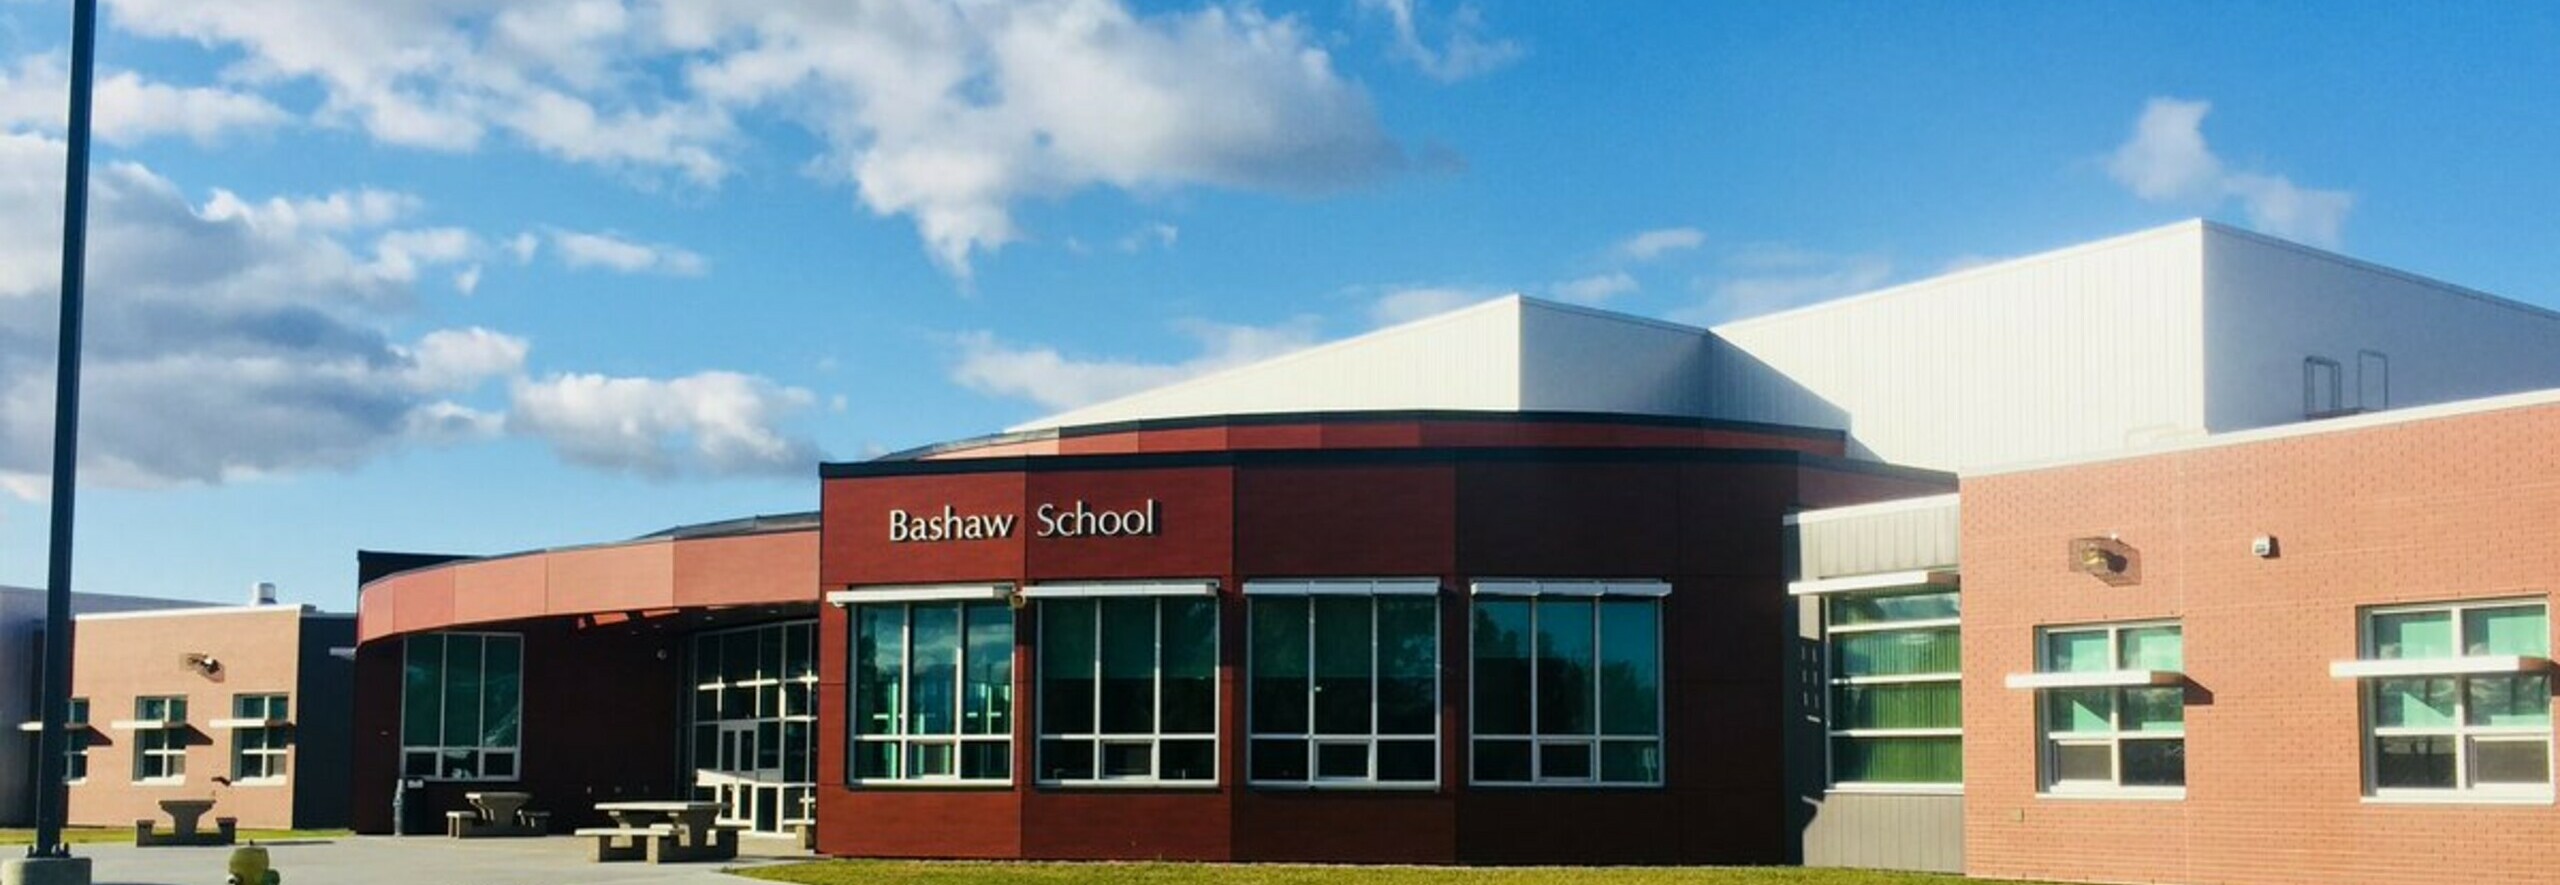 Bashaw School